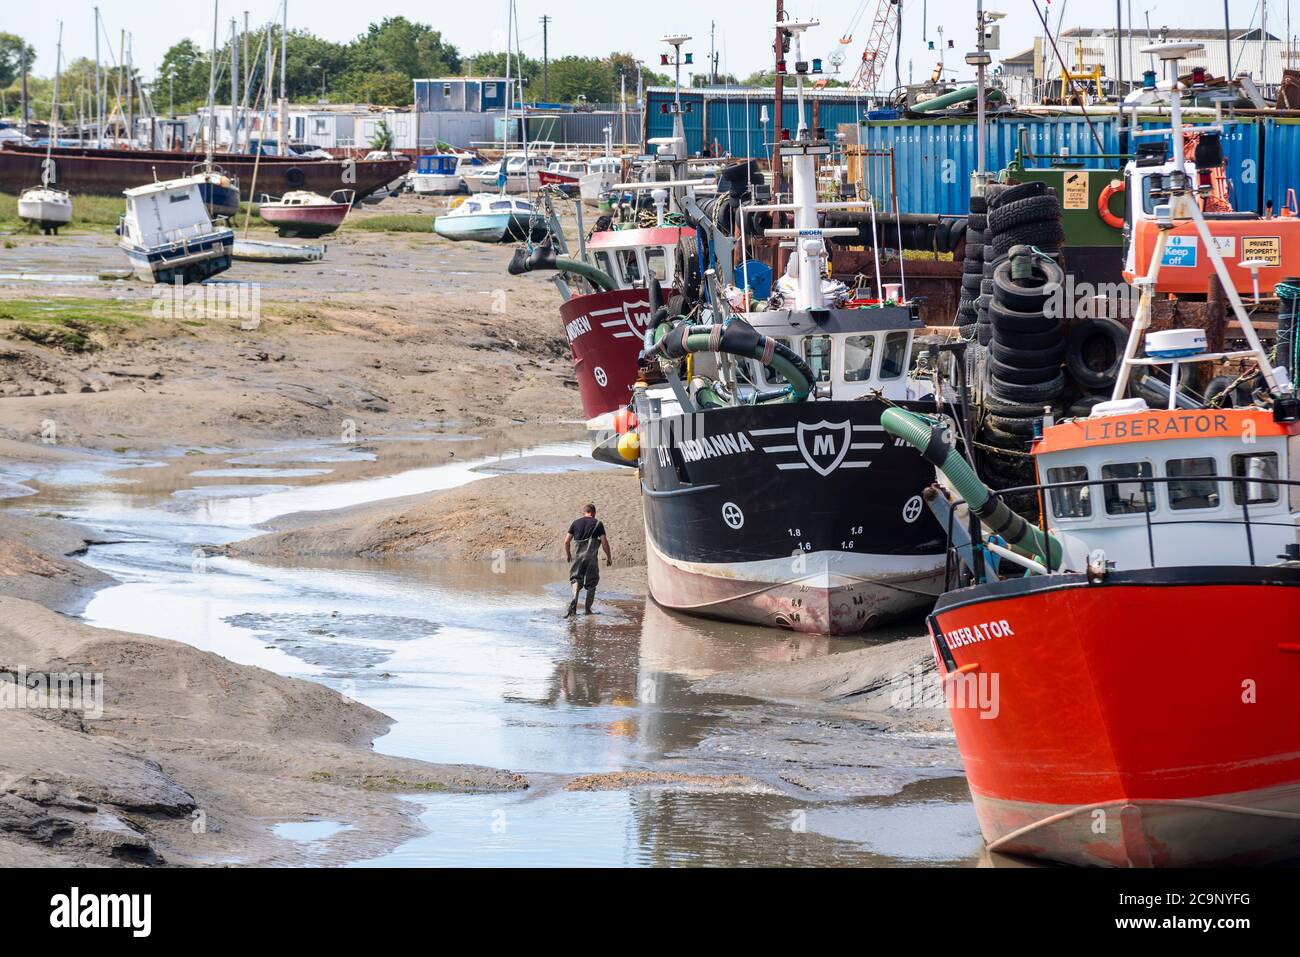 Flotta di pesca con bassa marea a Old Leigh, Leigh on Sea, Essex, Regno Unito. Persona in piedi da grande peschereccio per la scala. Barche da pesca, navi. Increspatura Foto Stock